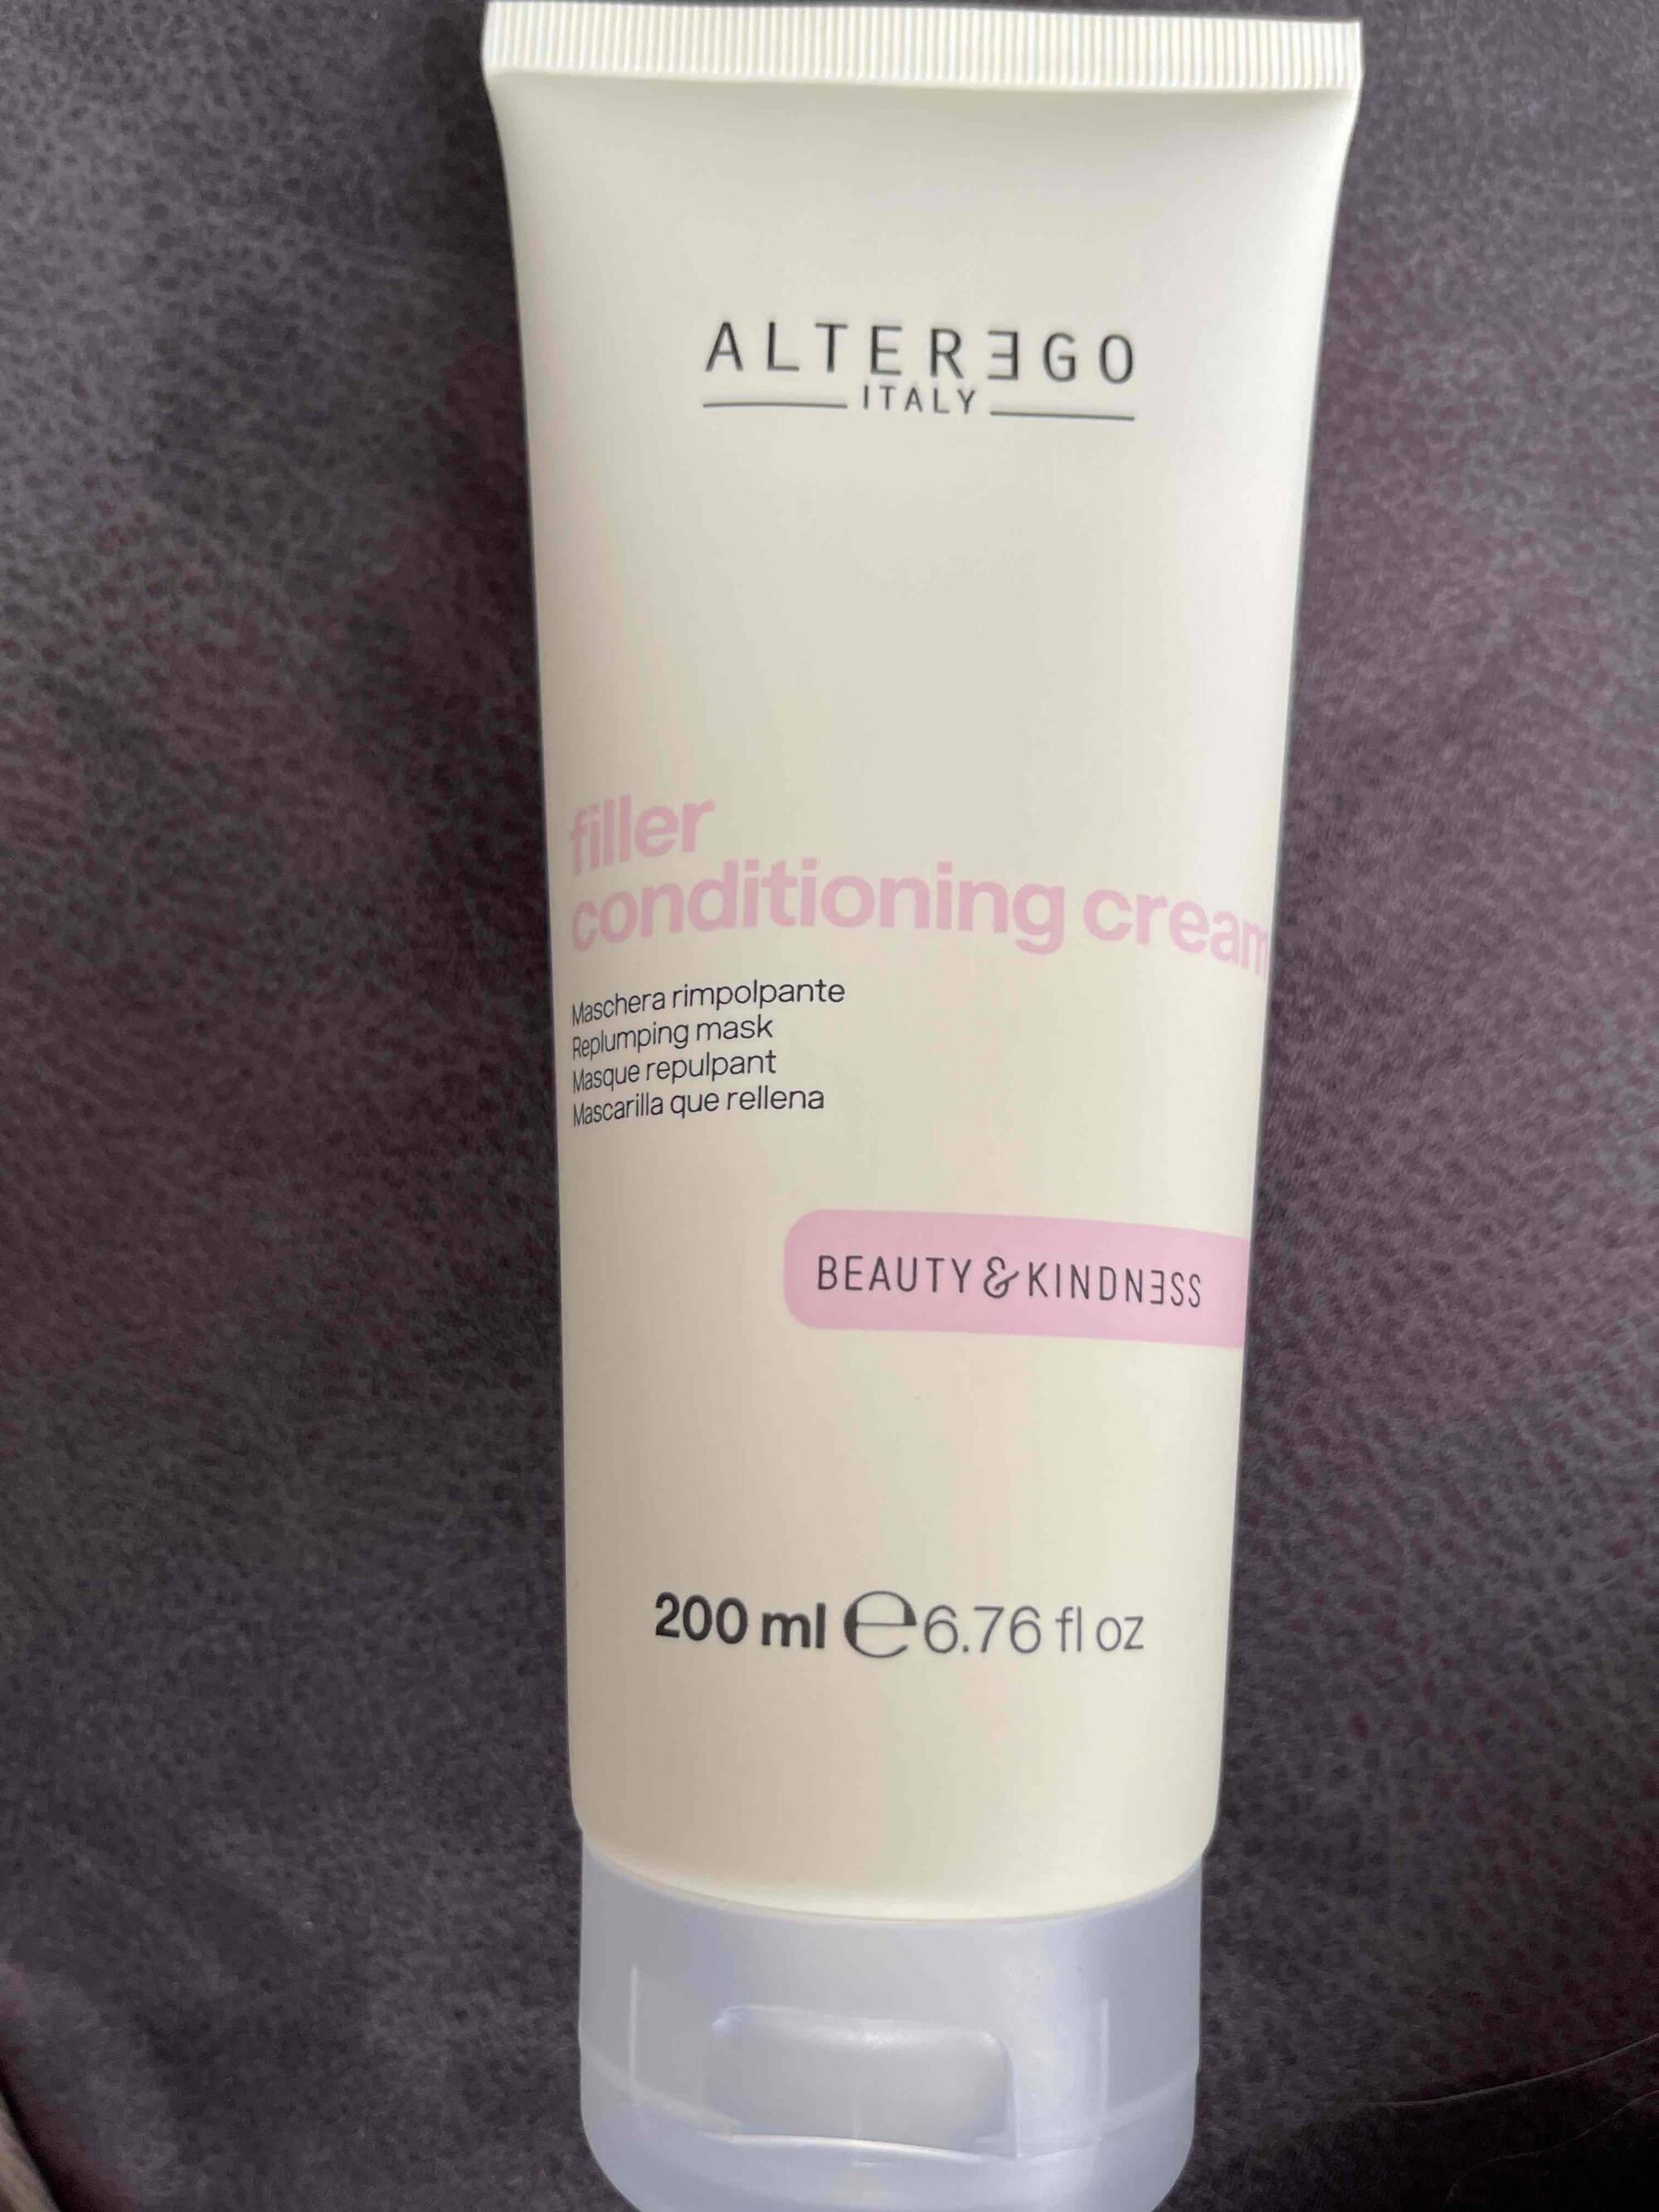 ALTER EGO - Filler conditioning cream